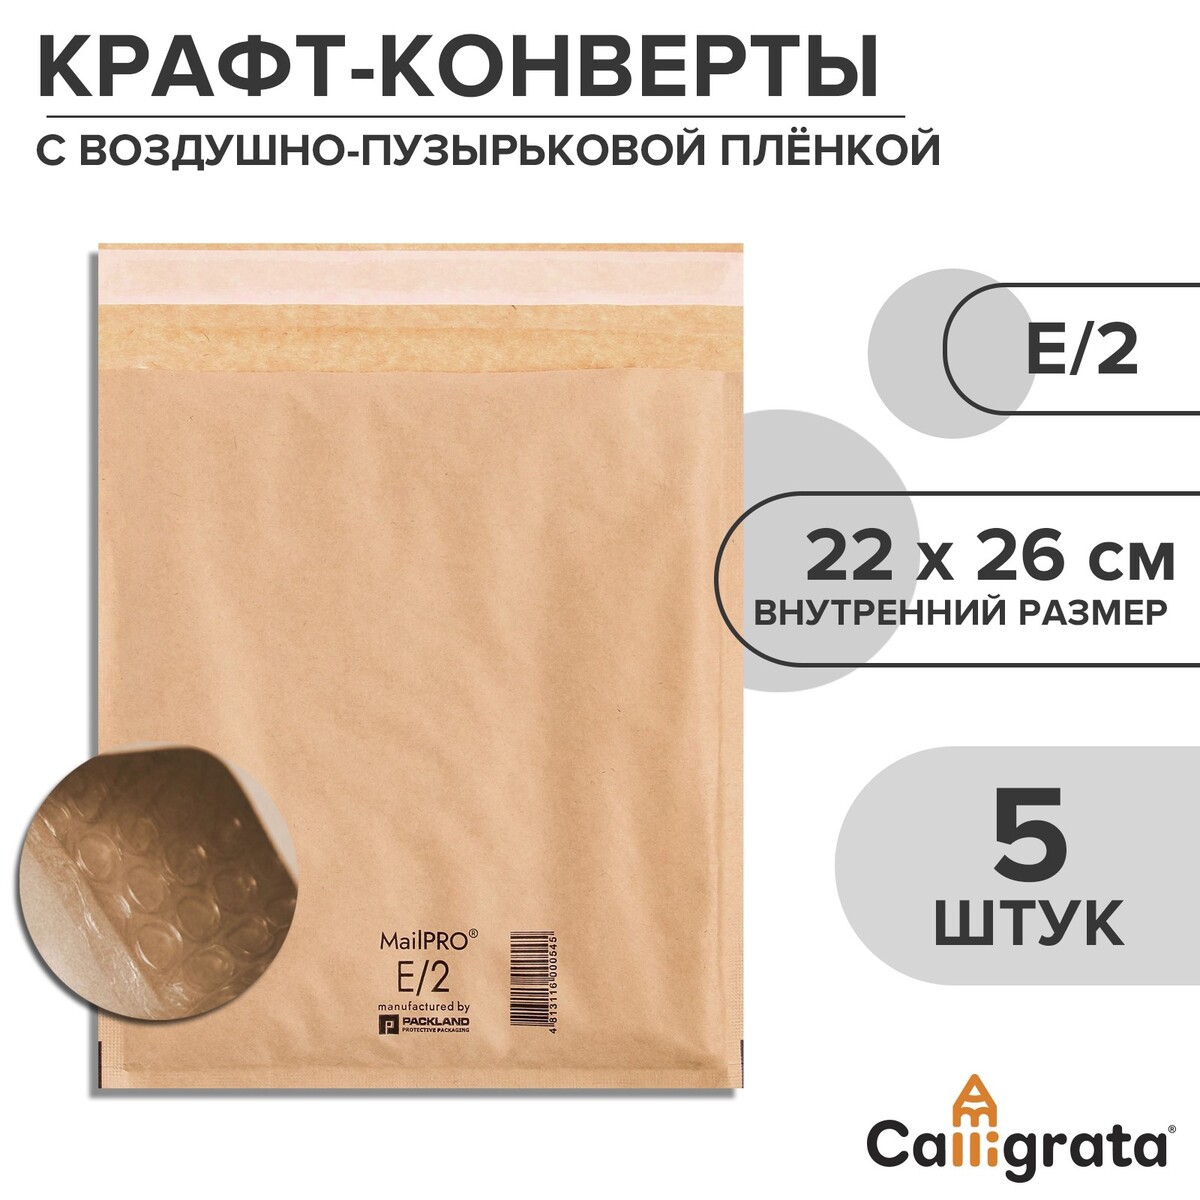 Набор крафт-конвертов с воздушно-пузырьковой пленкой mailpro e/2, 22 х 26 см, 5 штук, kraft коробка складная под 5 конфет крафт 5 х 22 х 3 5 см набор 5 шт